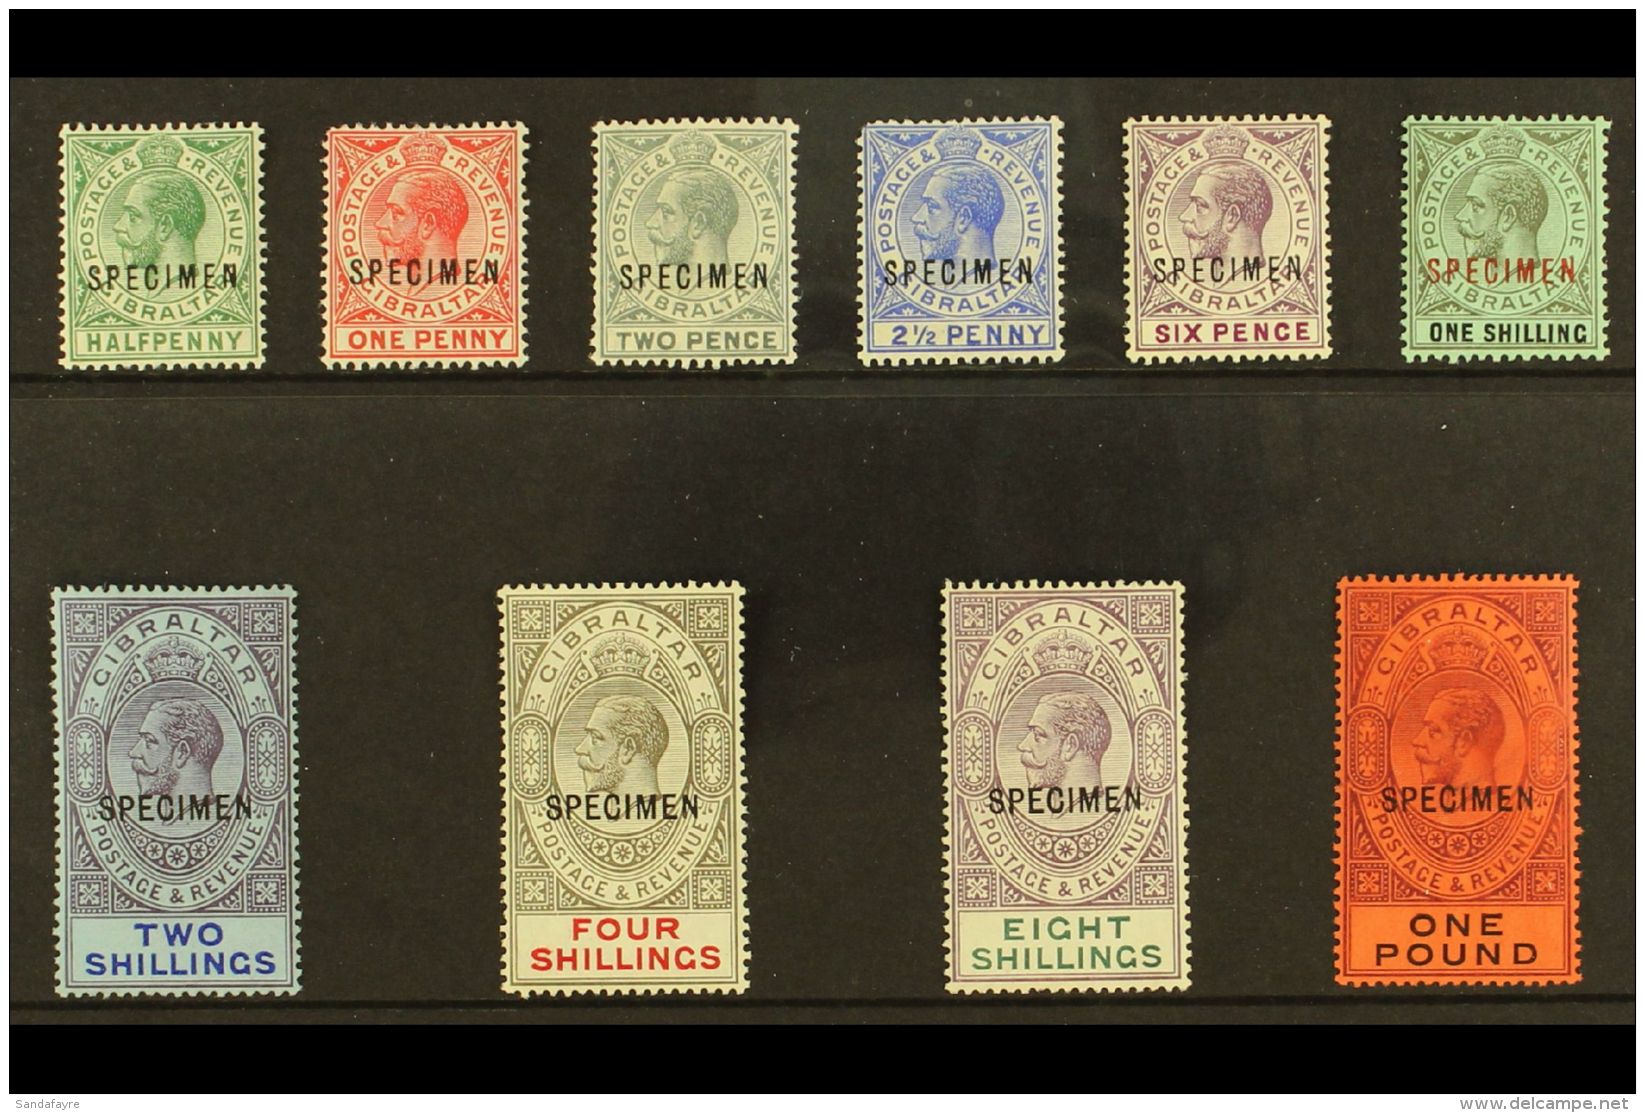 1912-24 KGV Multi CA Wmk "SPECIMEN" Opt'd Complete Set, SG 76s/85s, Fine Mint (10 Stamps) For More Images, Please... - Gibraltar